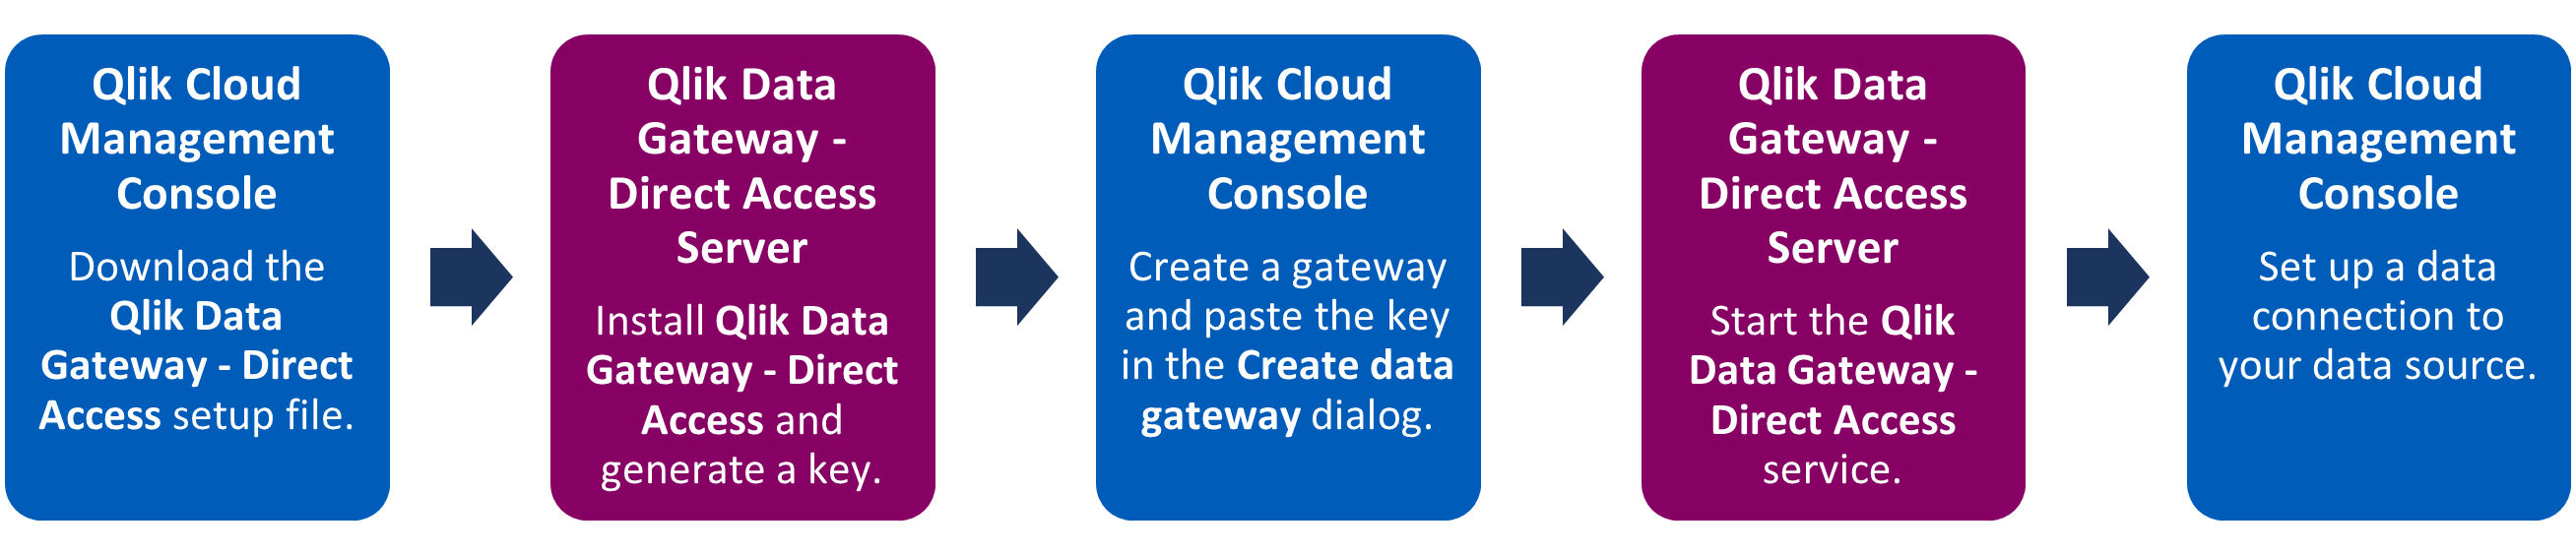 Diagrama de flujo de la pasarela de datos de acceso directo: pasos de configuración